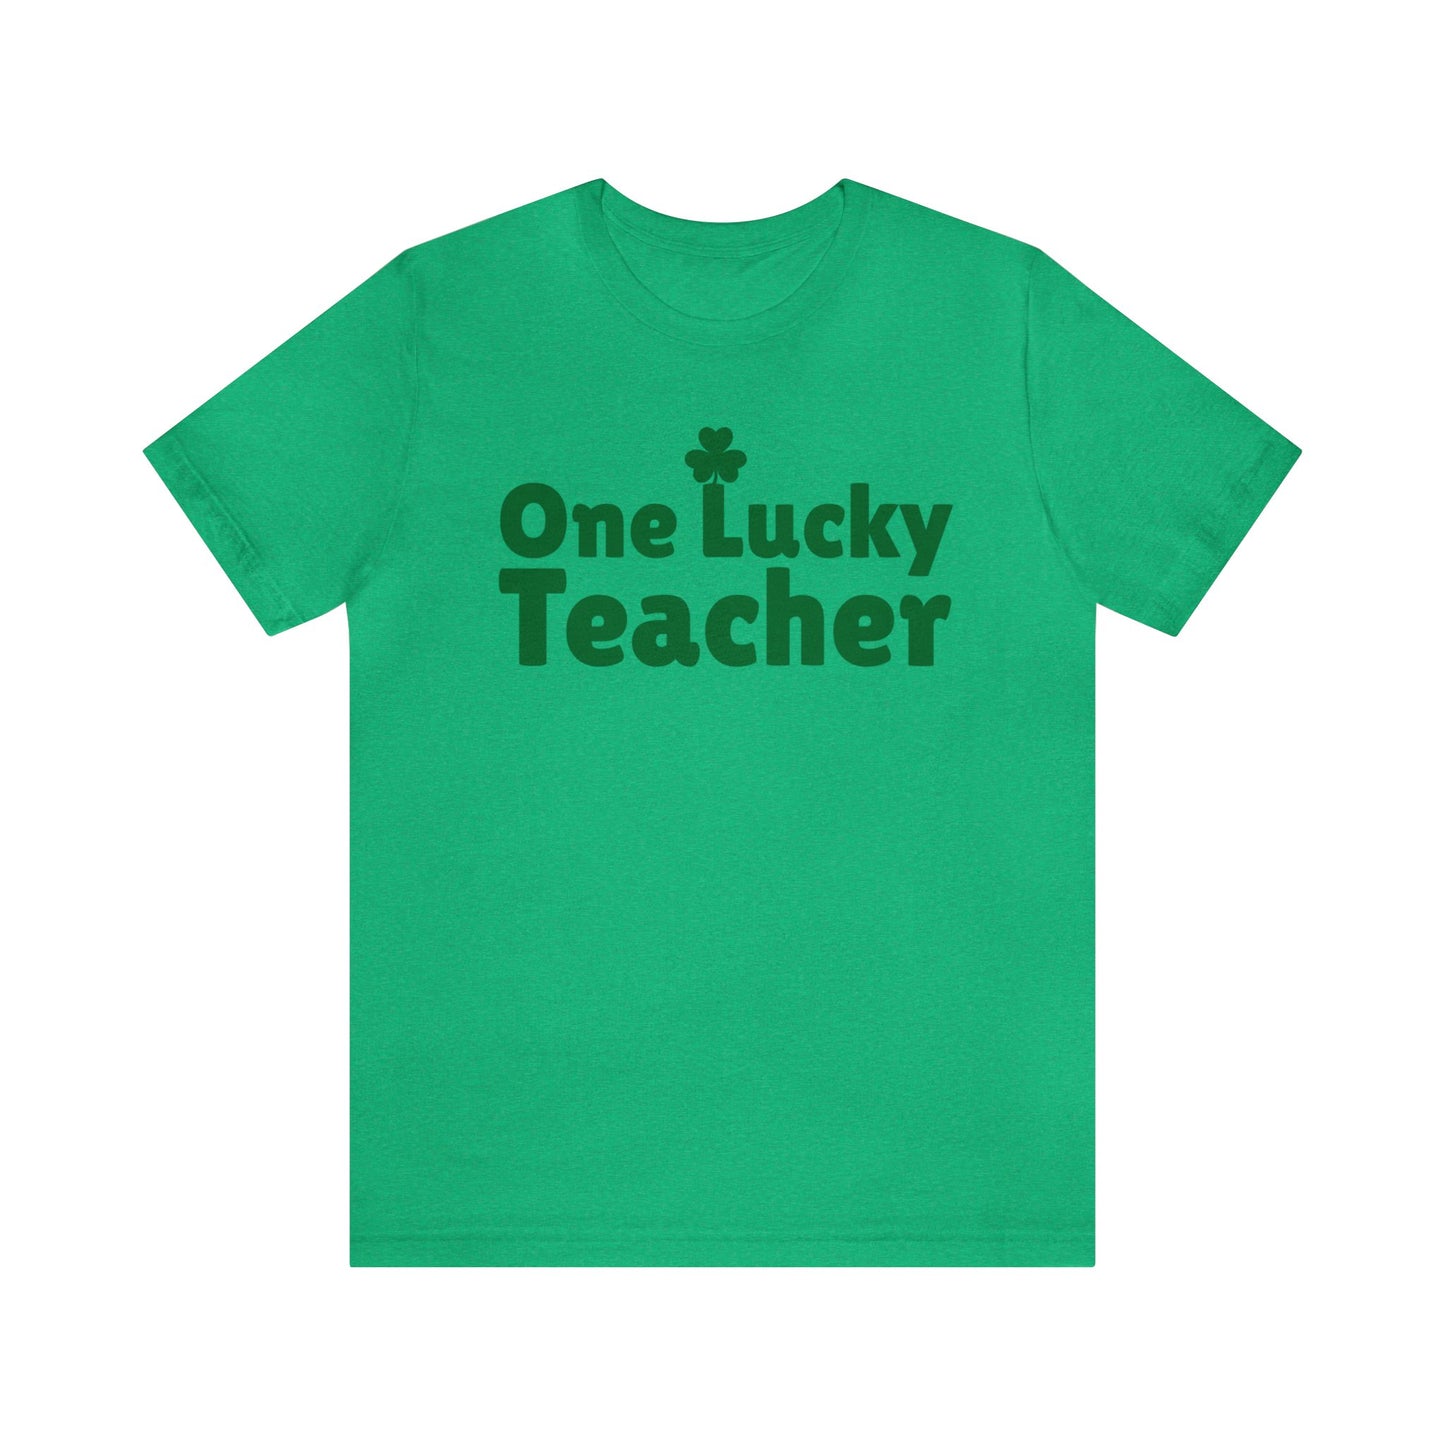 Feeling Lucky Shirt One Lucky Teacher Shirt Saint Patrick's Day Shirt St Paddy's Shirt